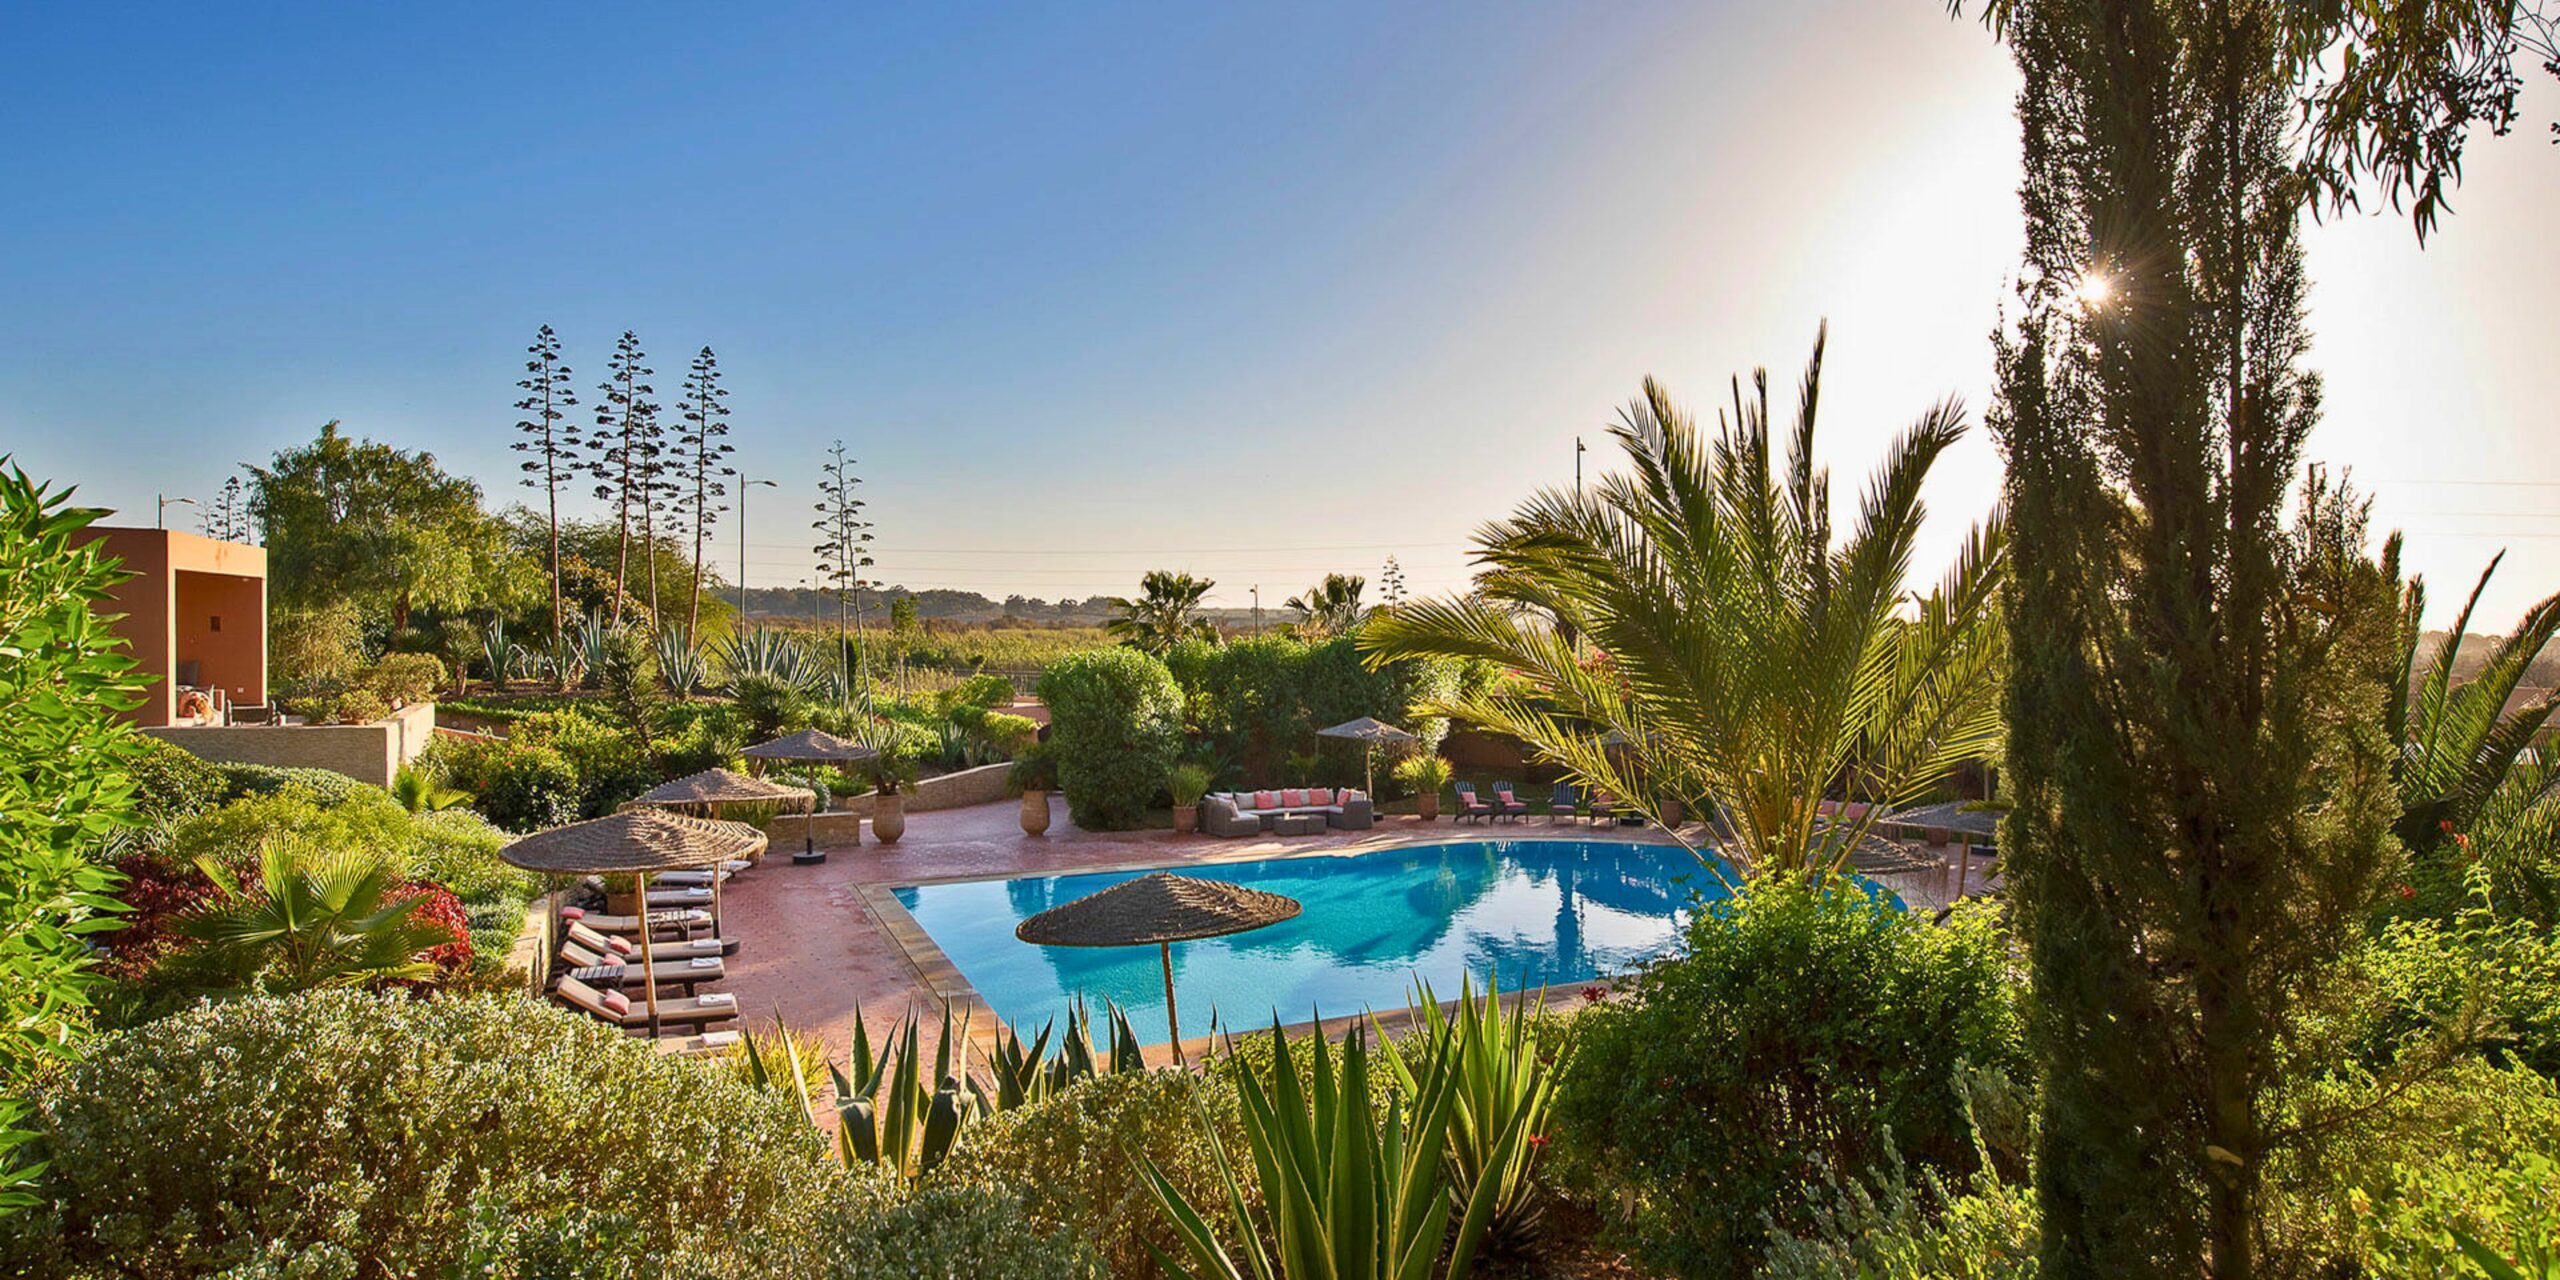 La piscine dans le jardin de la villa à Agadir